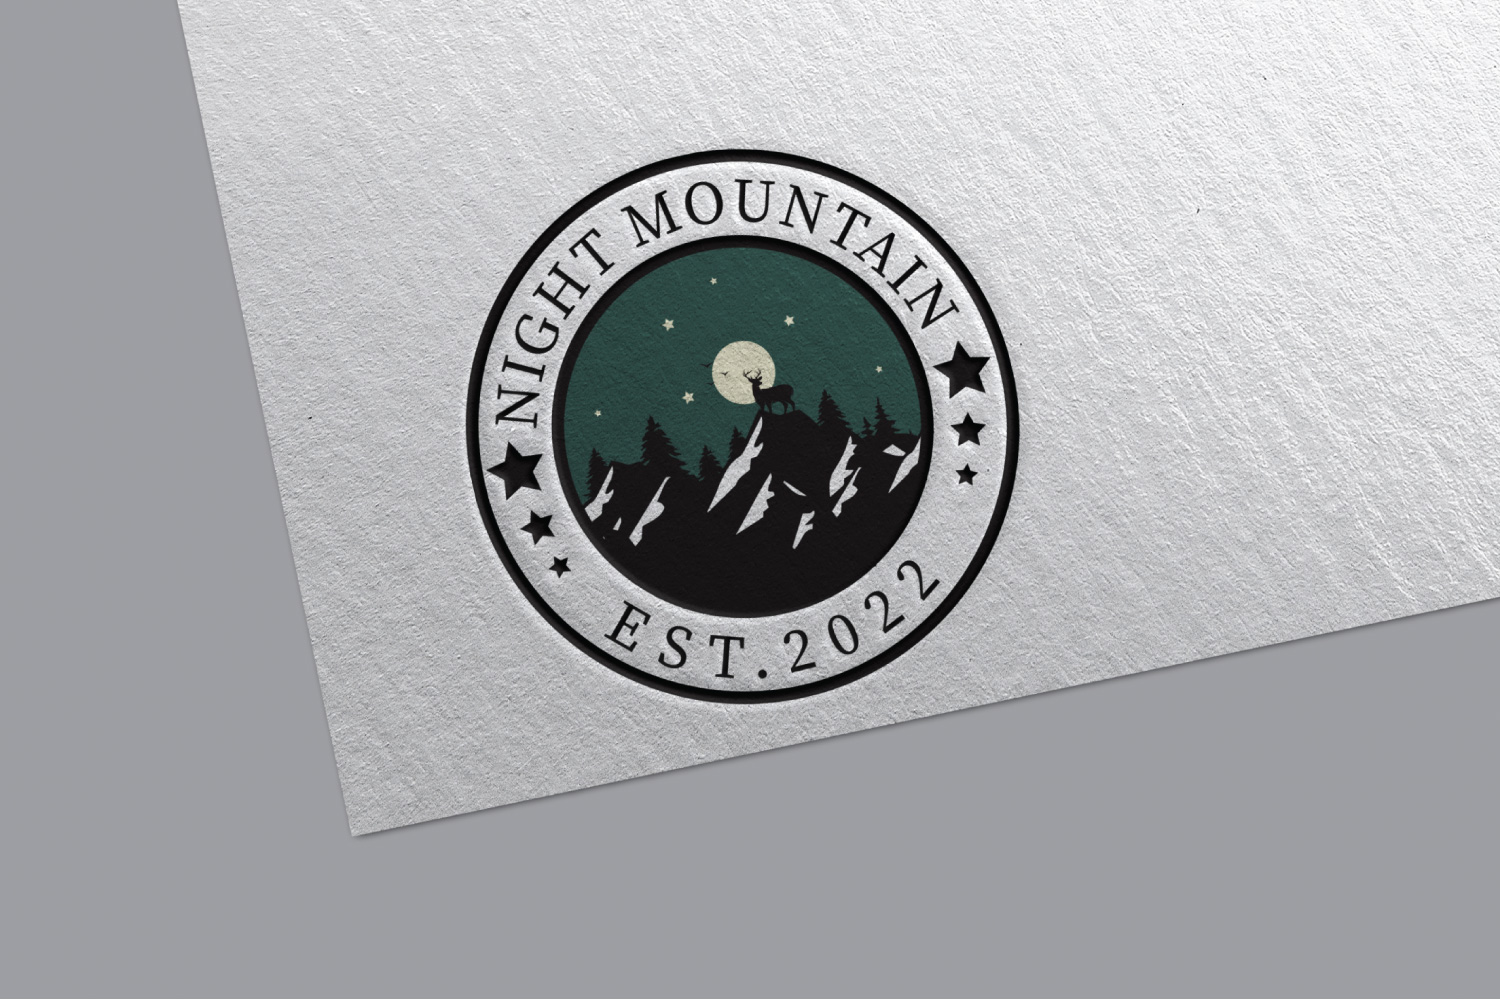 Mountain Logo Design facebook image.